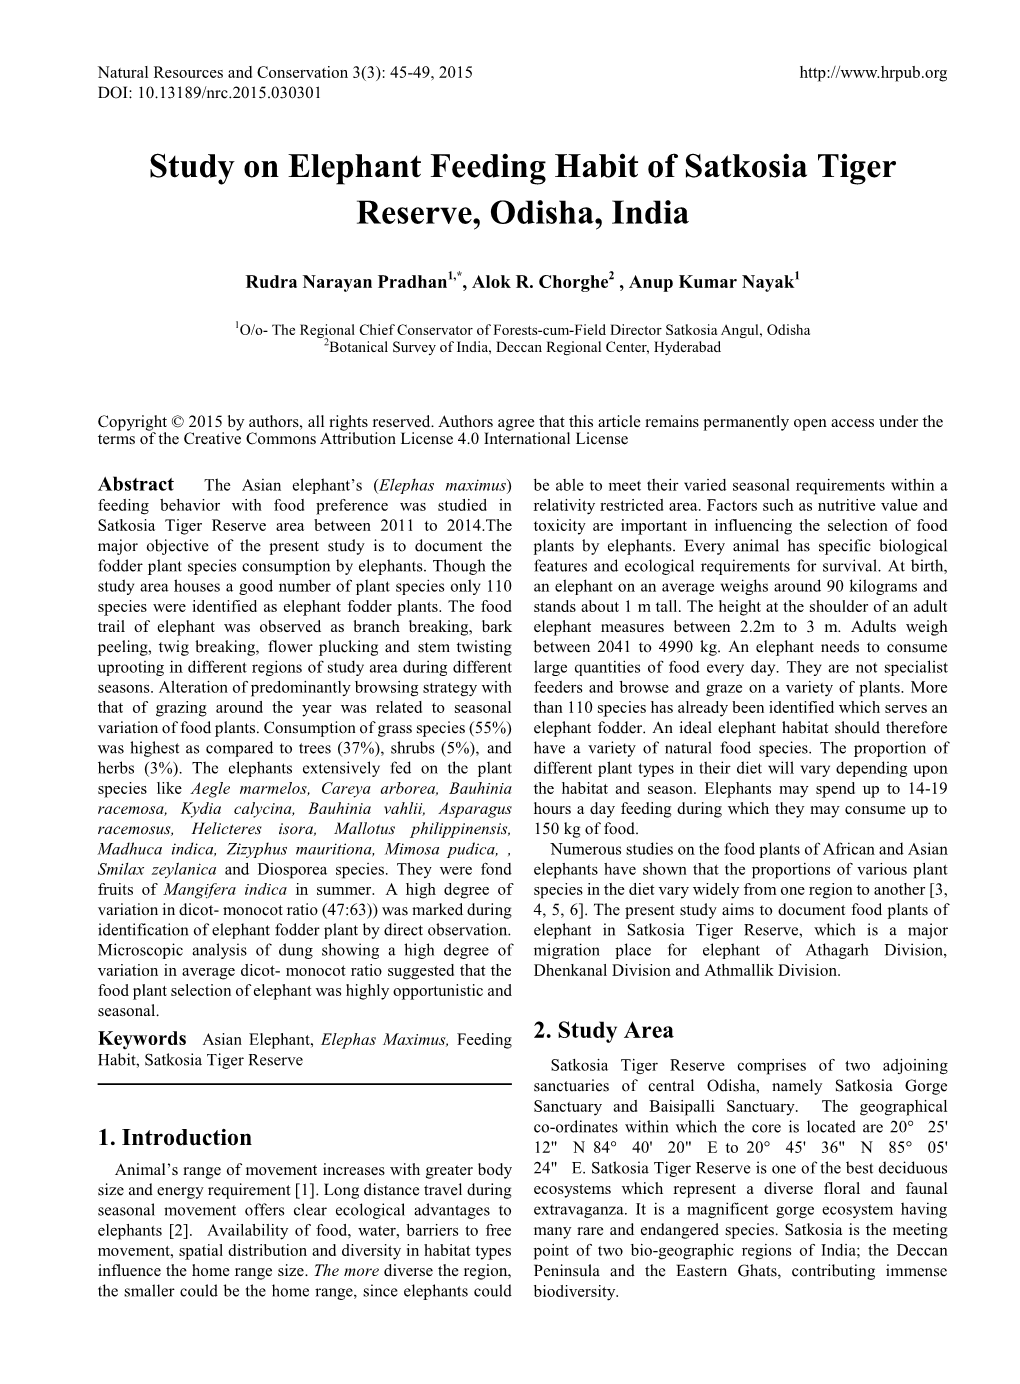 Study on Elephant Feeding Habit of Satkosia Tiger Reserve, Odisha, India